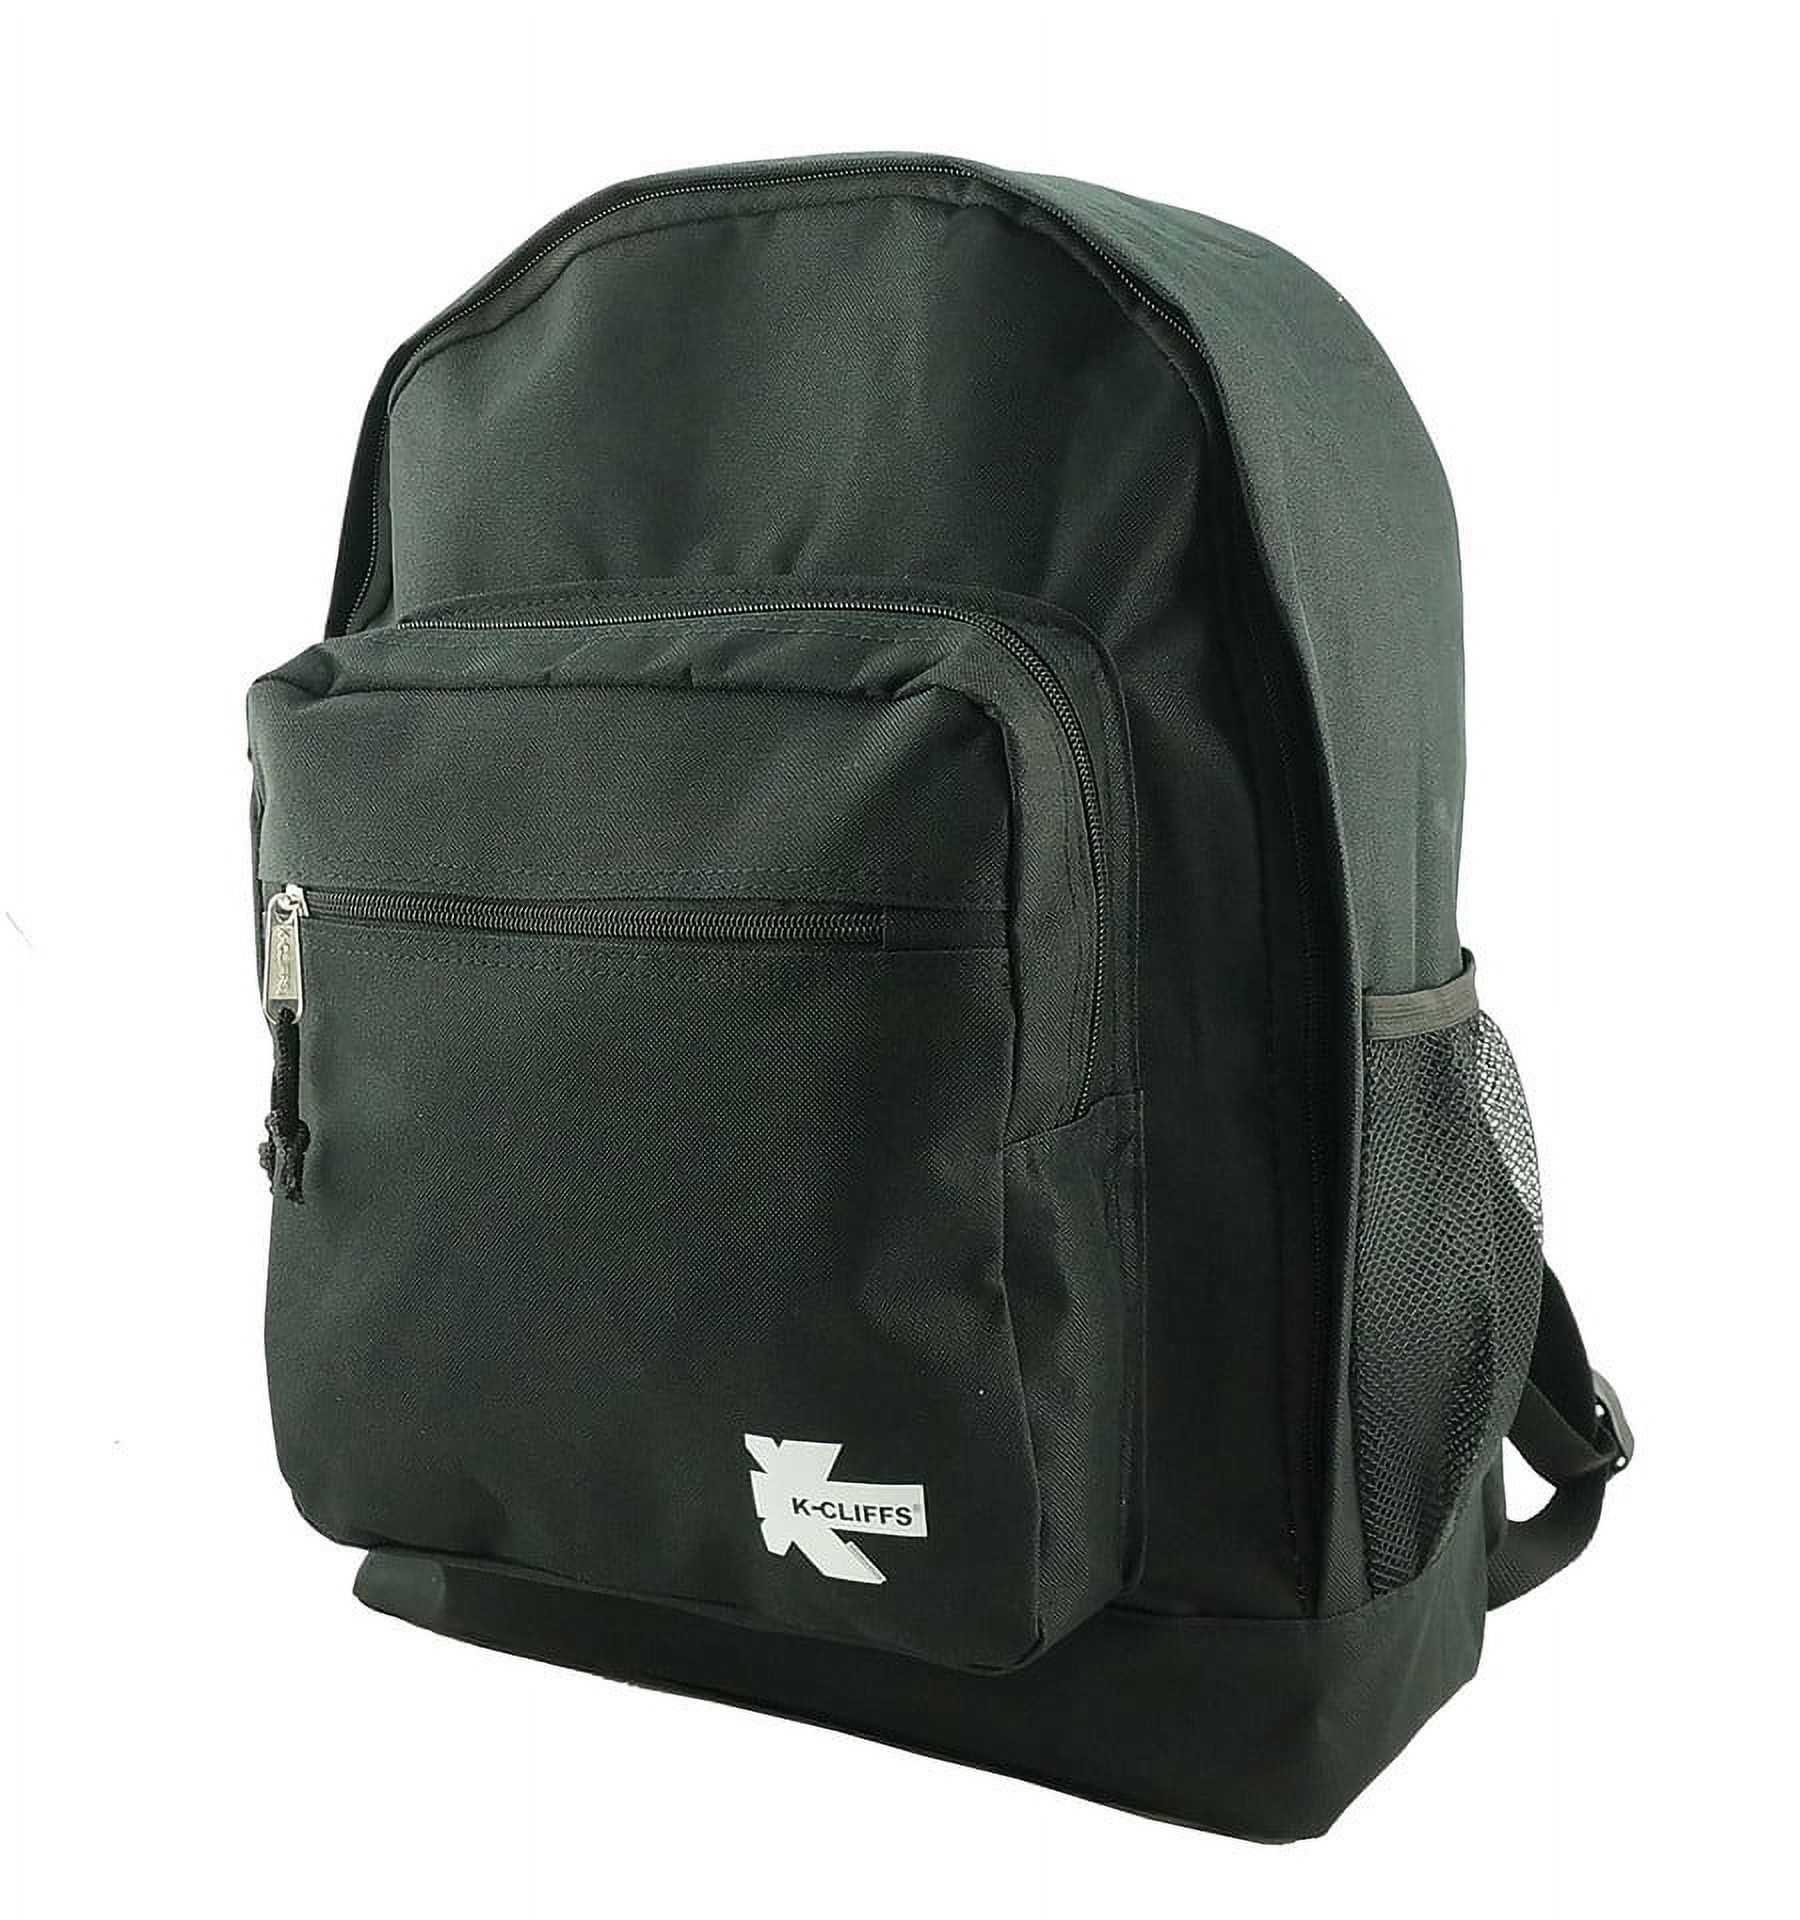 K-Cliffs Large Backpack for Kids-College Students , Lightweight Durable Travel Backpack Fits 15.6 Laptops Water Resistant, Unisex Adjustable Padded Shoulder Straps  (Black) - image 2 of 5